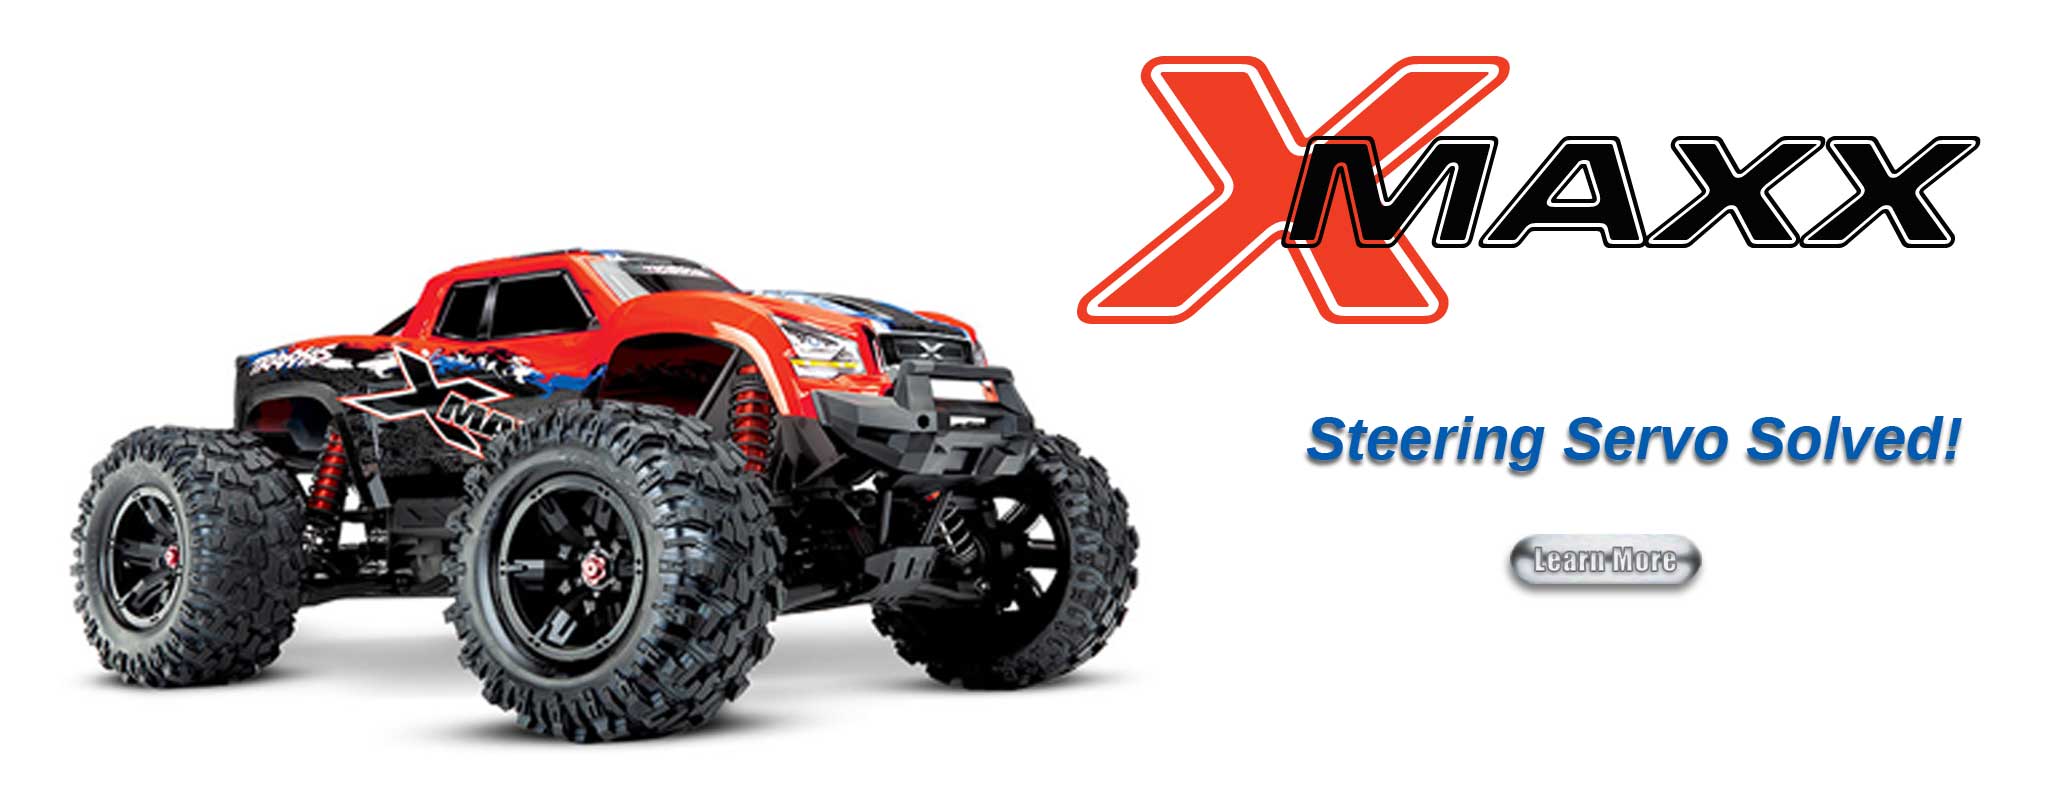 At last, a standard size X-Maxx steering servo solution!